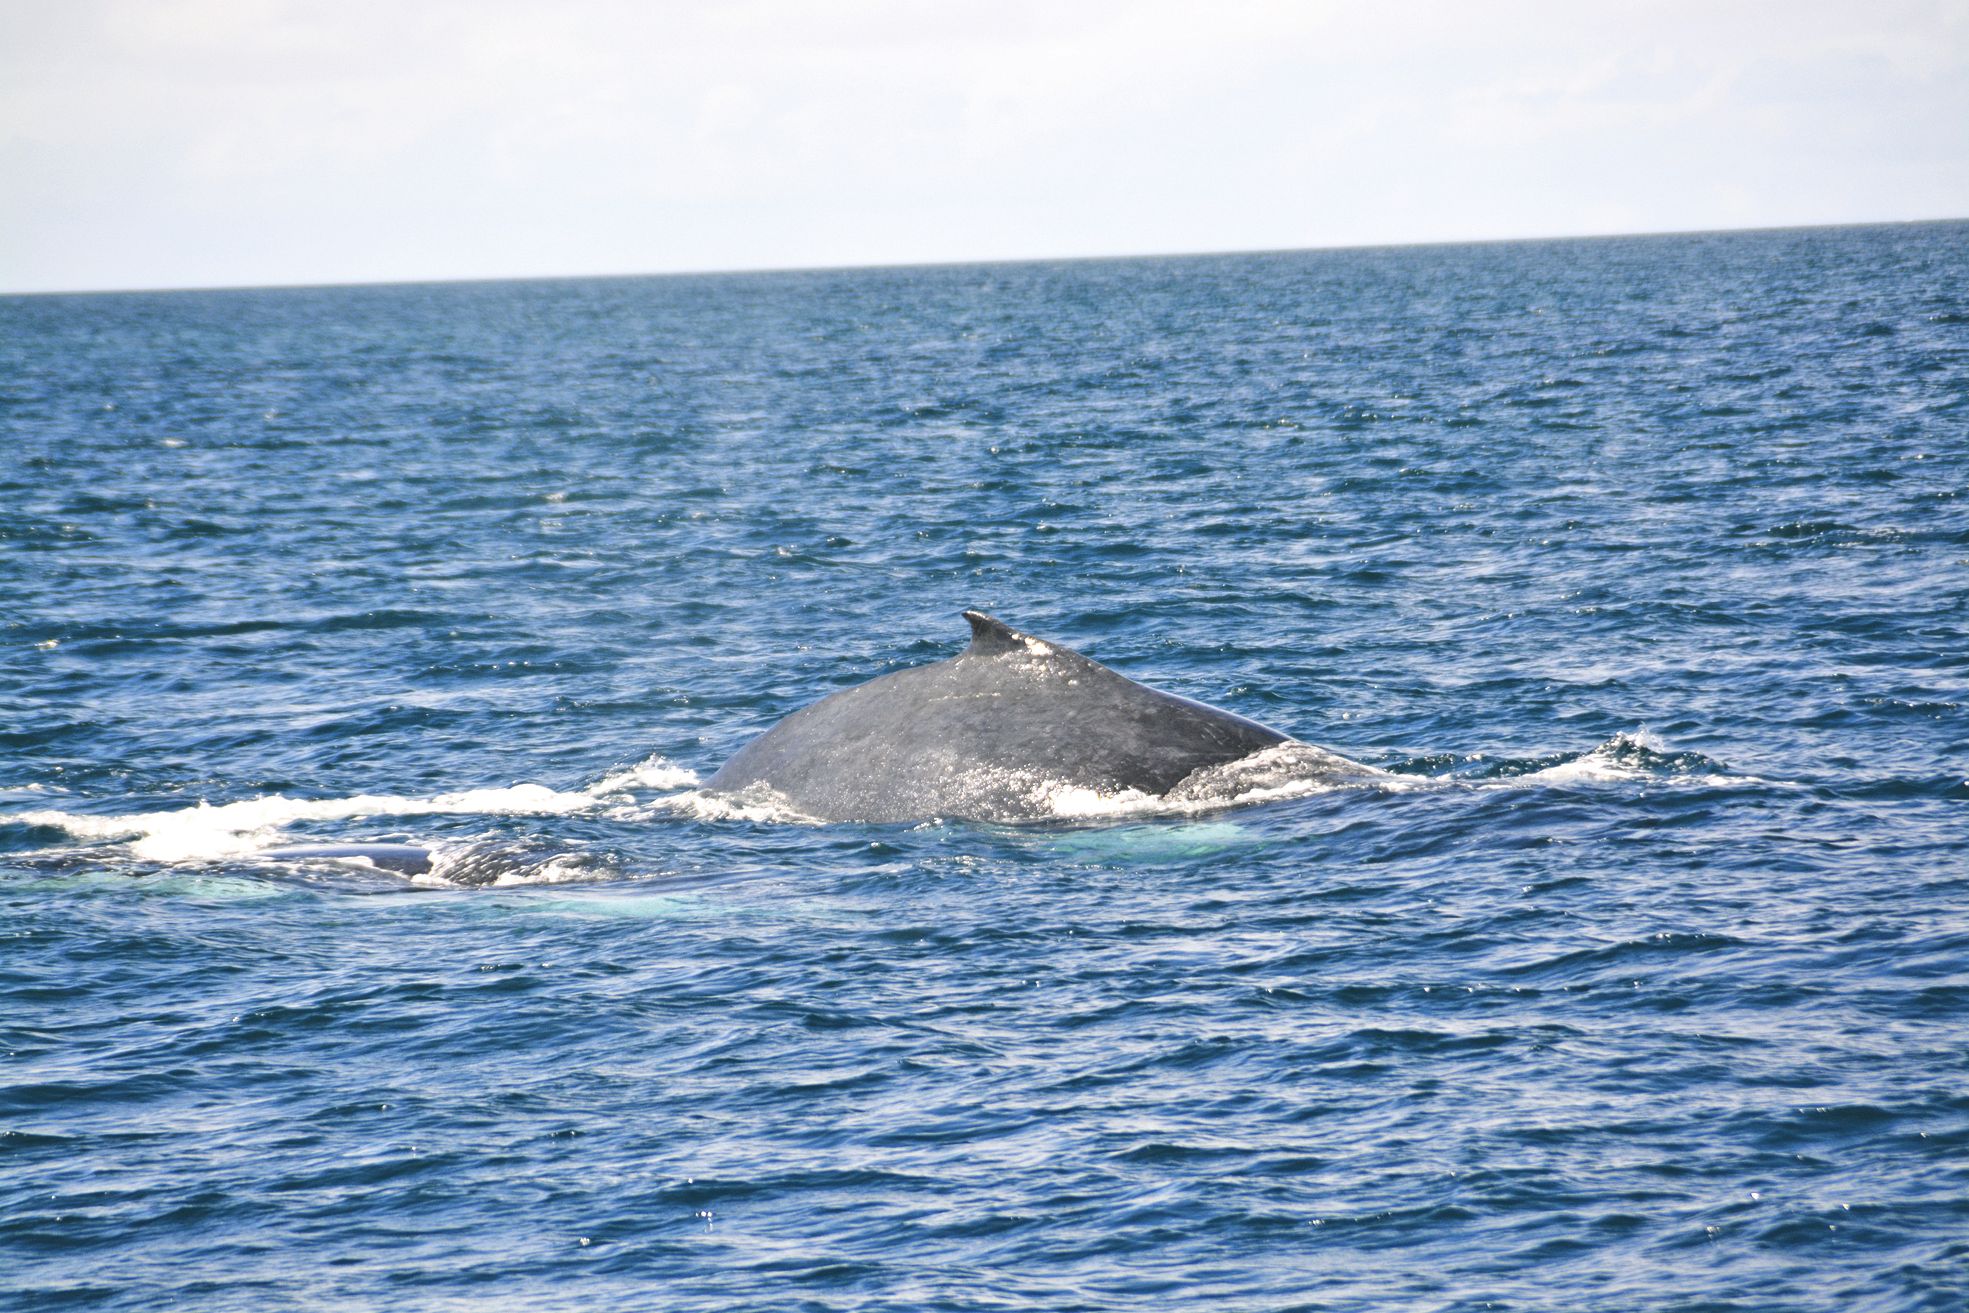 La baleine à bosse a été baptisée ainsi car avant de plonger elle arque fortement le dos, formant une grosse bosse à la surface